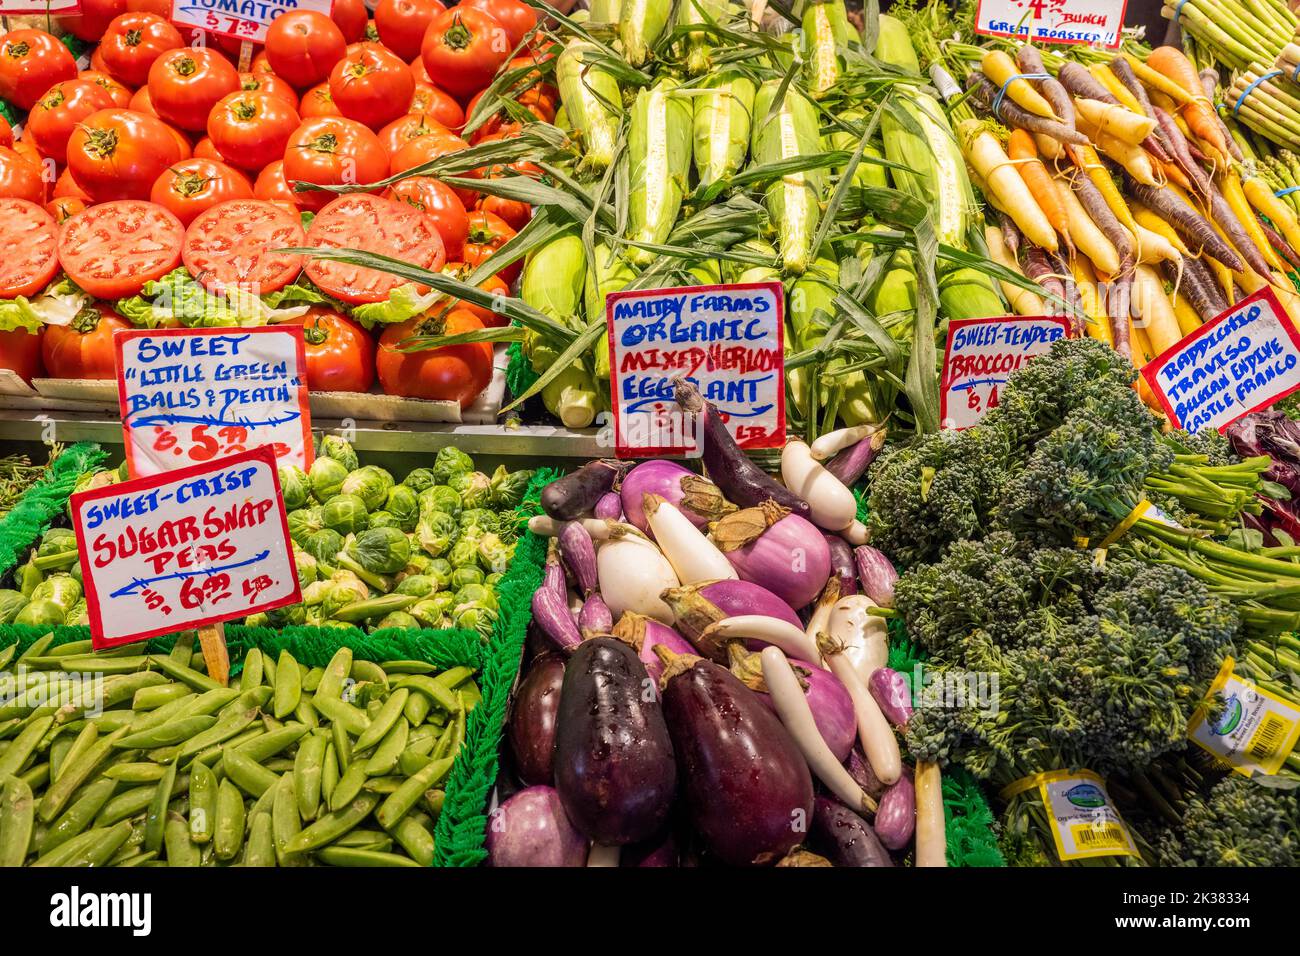 Stand de fruits et légumes à Pike place Market, Seattle, Washington, États-Unis Banque D'Images